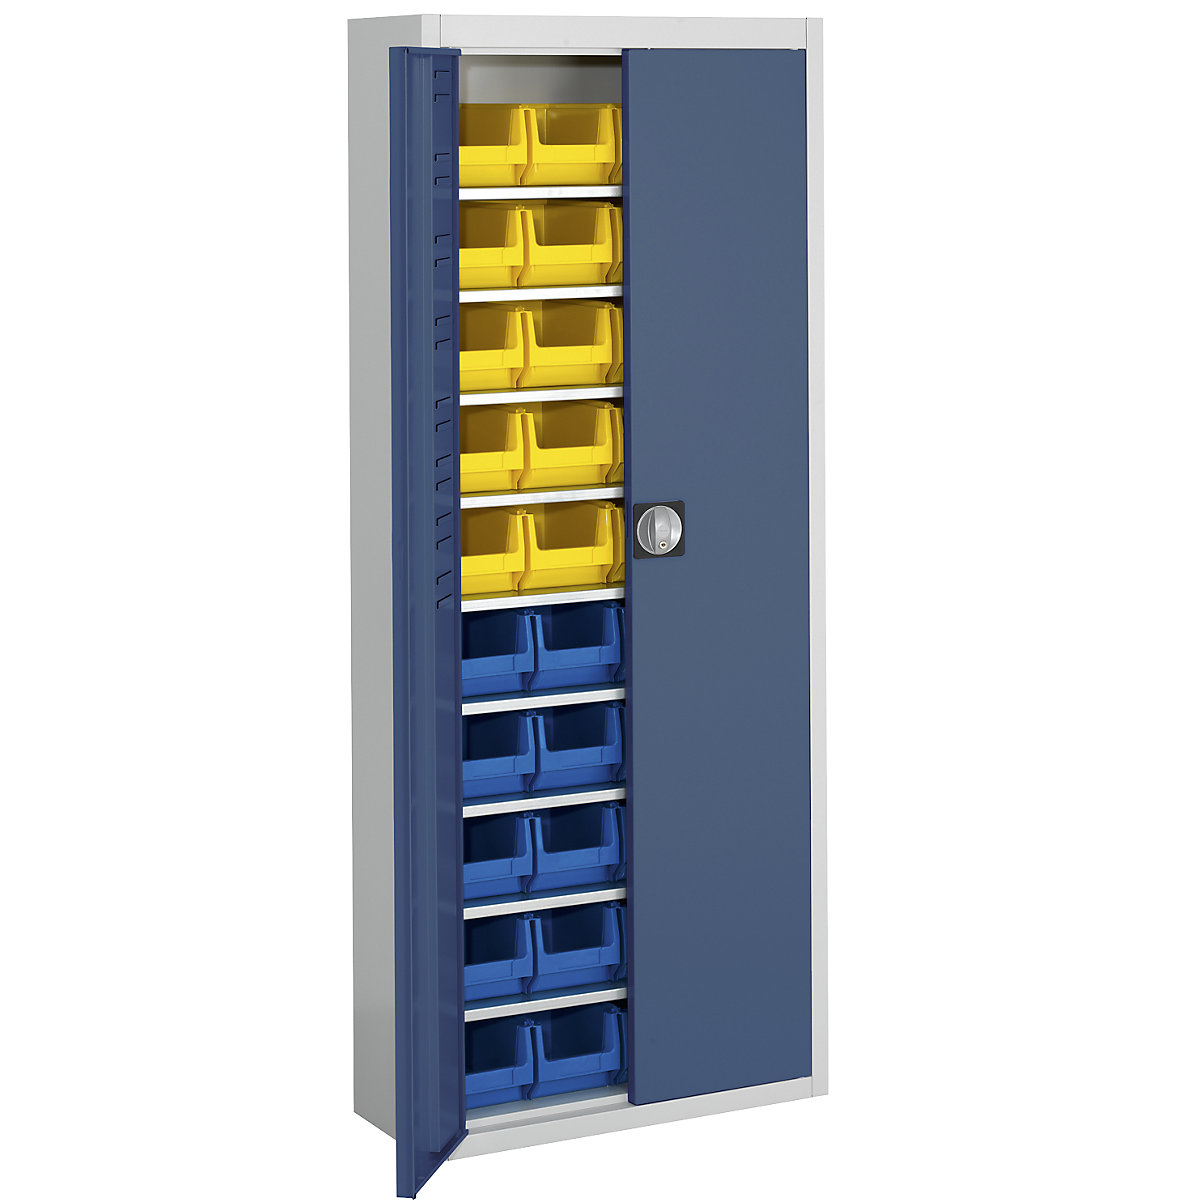 Magazijnkast met magazijnbakken – mauser, h x b x d = 1740 x 680 x 280 mm, tweekleurig, kastframe grijs, deuren blauw, 40 bakken-8